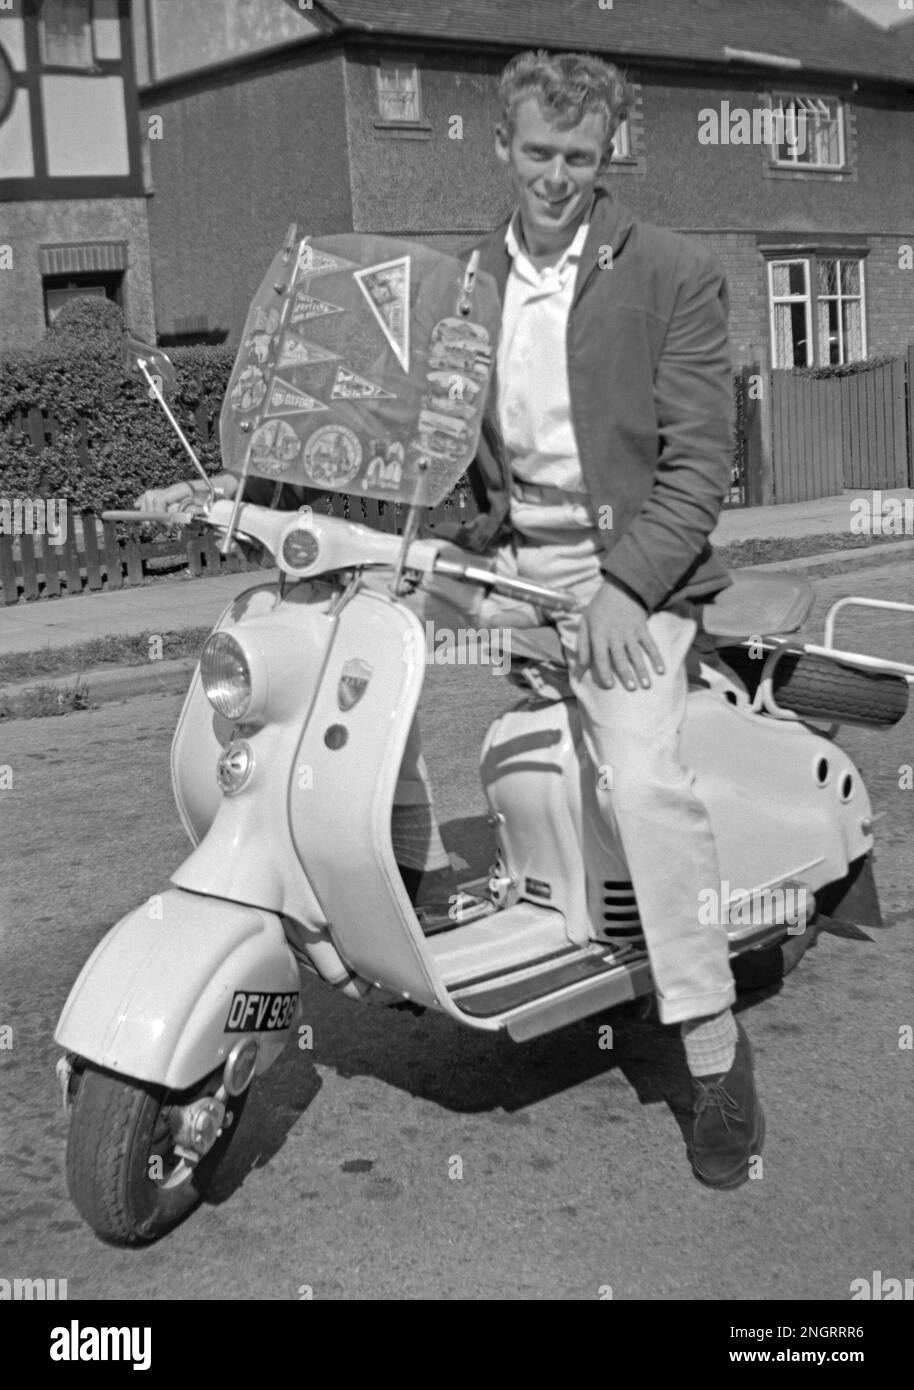 Jeune homme habillé à la mode sur un scooter Lambretta au Royaume-Uni à la mi-1960s. Il porte une veste décontractée, un pantalon blanc cassé avec des turnups et des chaussures en daim. Les lieux visités par le scooter sont présentés comme des fourmis sur le pare-brise, notamment Paris et Oxford. Cette photographie vintage de l'époque où les scooters sont devenus une forme de transport « Mod » avec la culture de la jeunesse britannique. Cette image est tirée d'un vieux négatif amateur de 35mm – une photographie vintage de 1960s. Banque D'Images